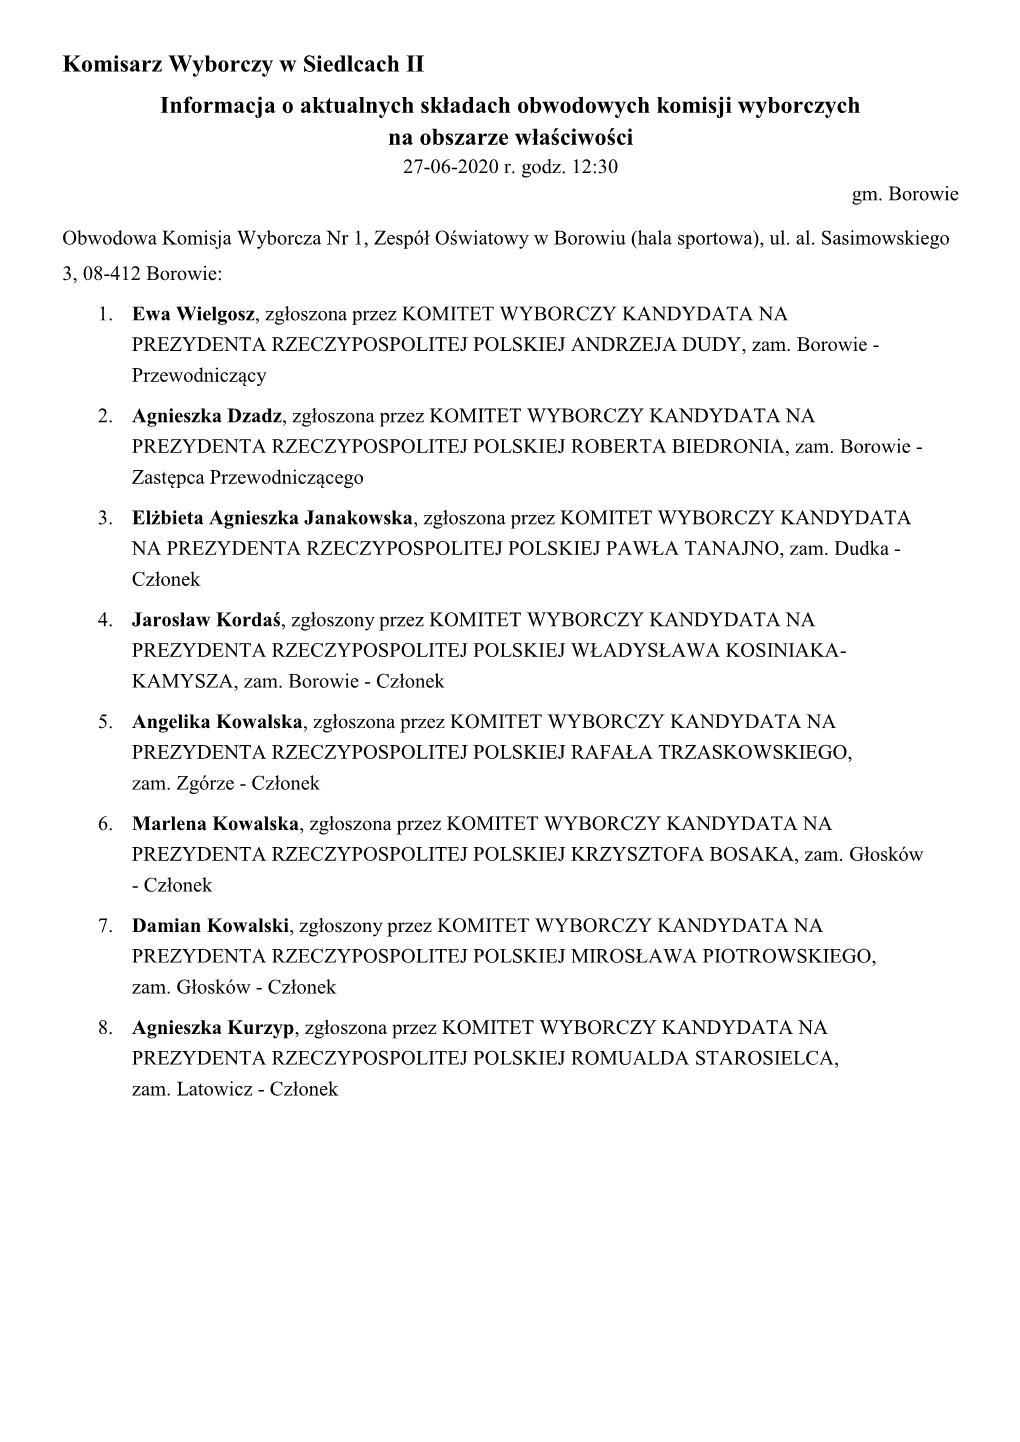 Komisarz Wyborczy W Siedlcach II Informacja O Aktualnych Składach Obwodowych Komisji Wyborczych Na Obszarze Właściwości 27-06-2020 R